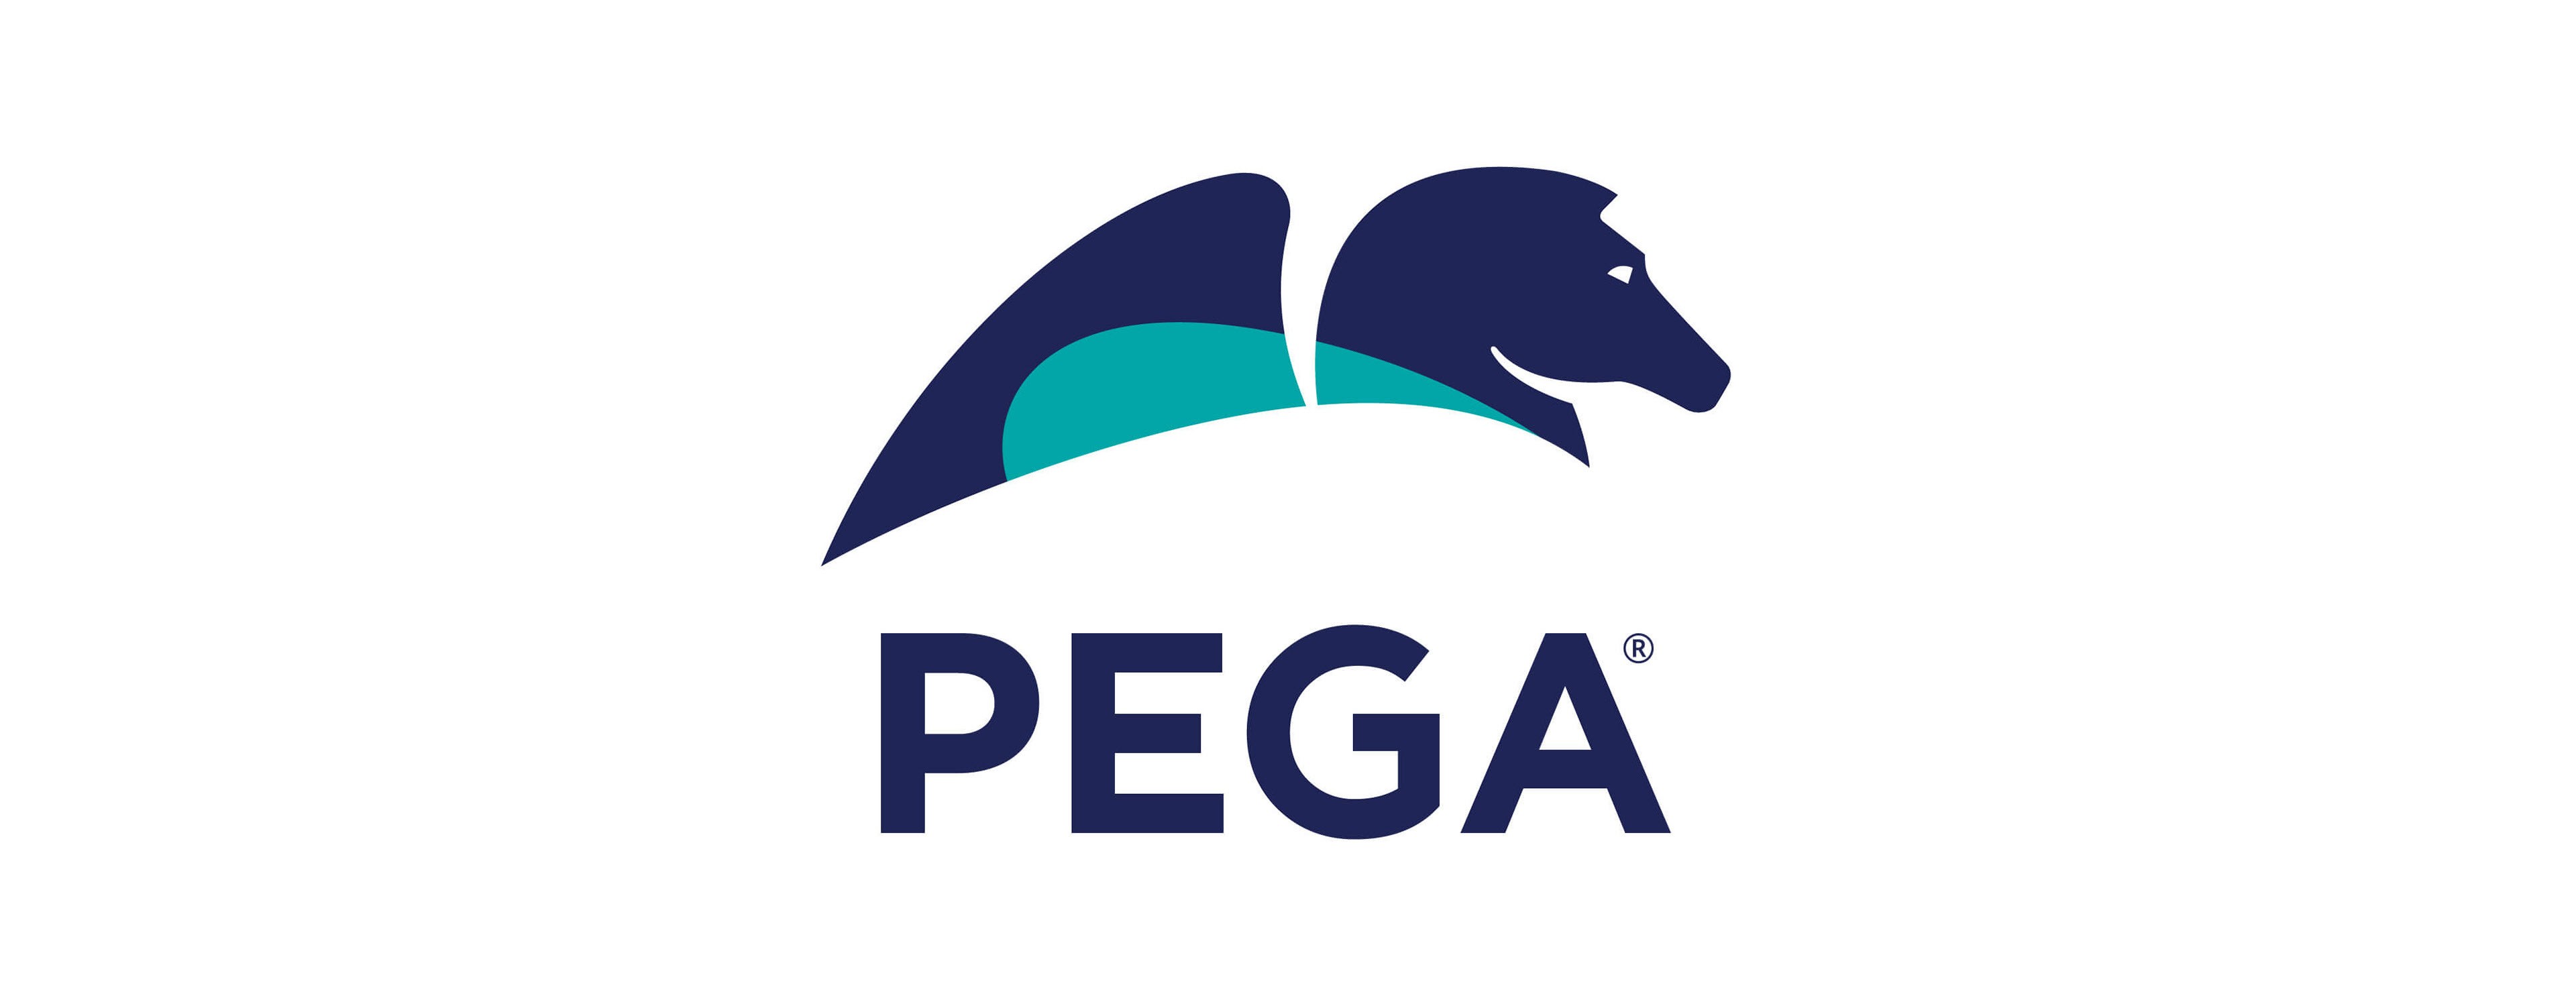             Pegaのロゴ        